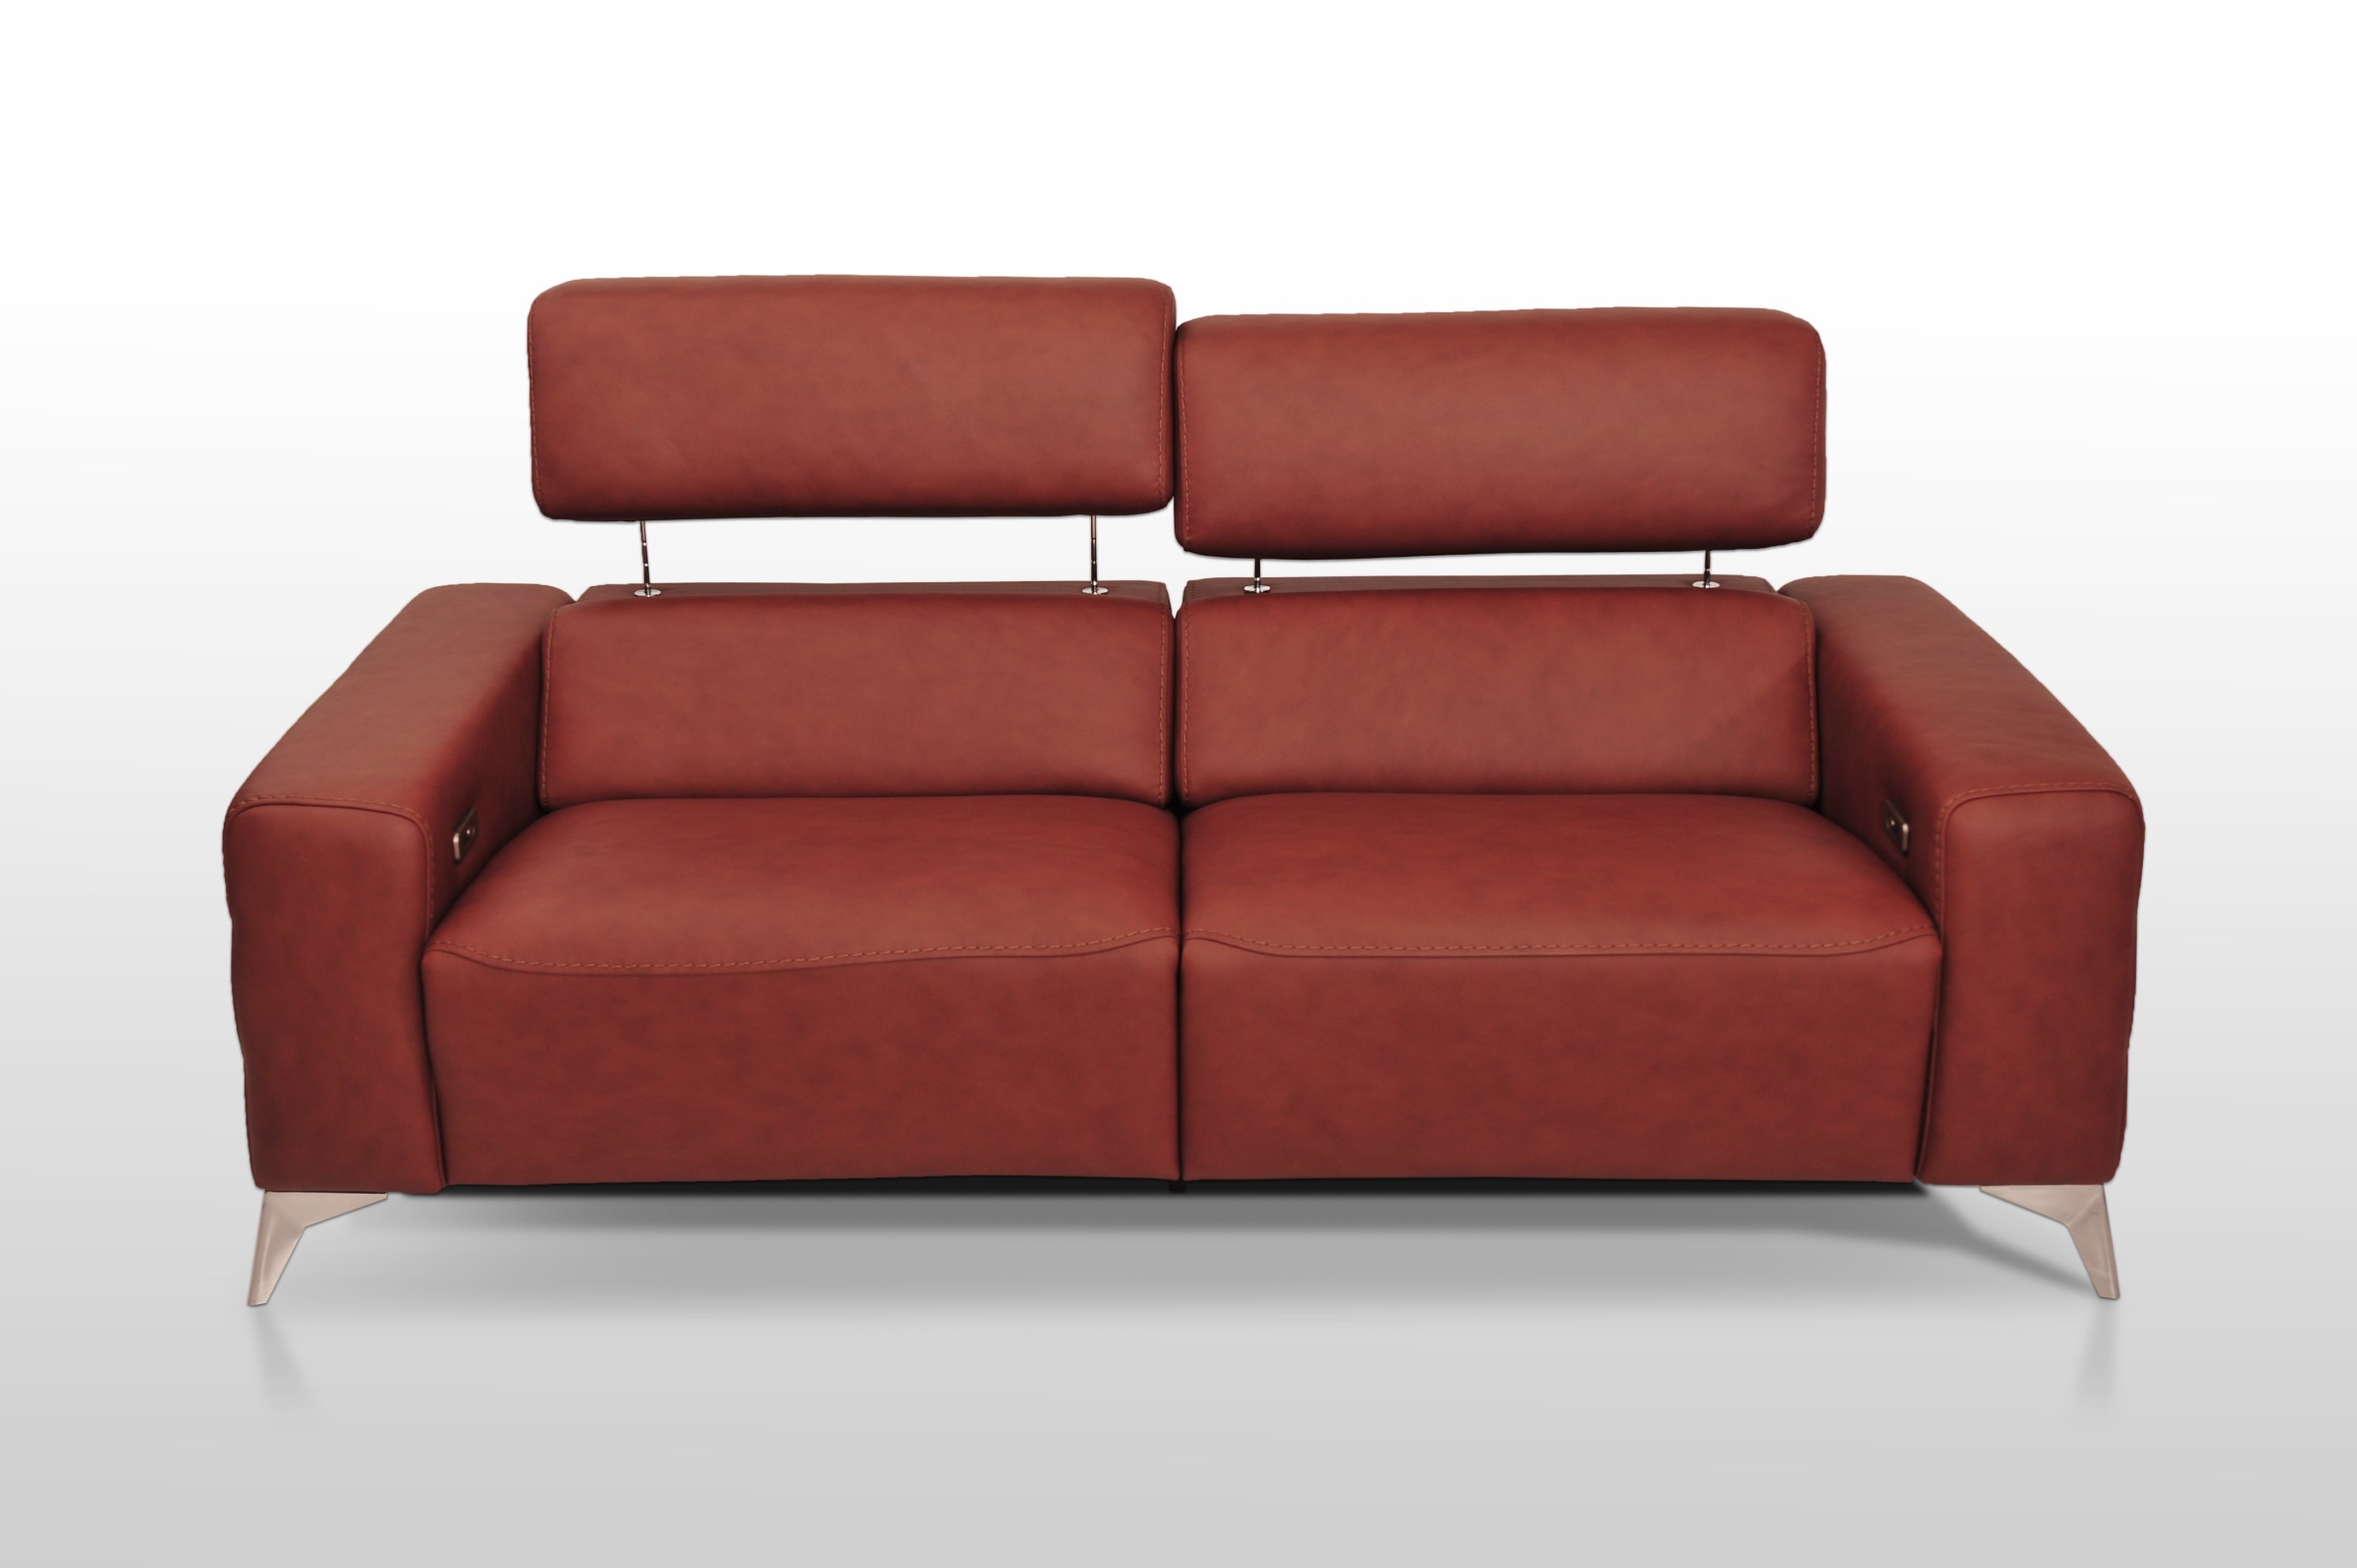 Sofa z regulacją zagłówka delikatny nowoczesny design najwyższa jakość dobrodzień